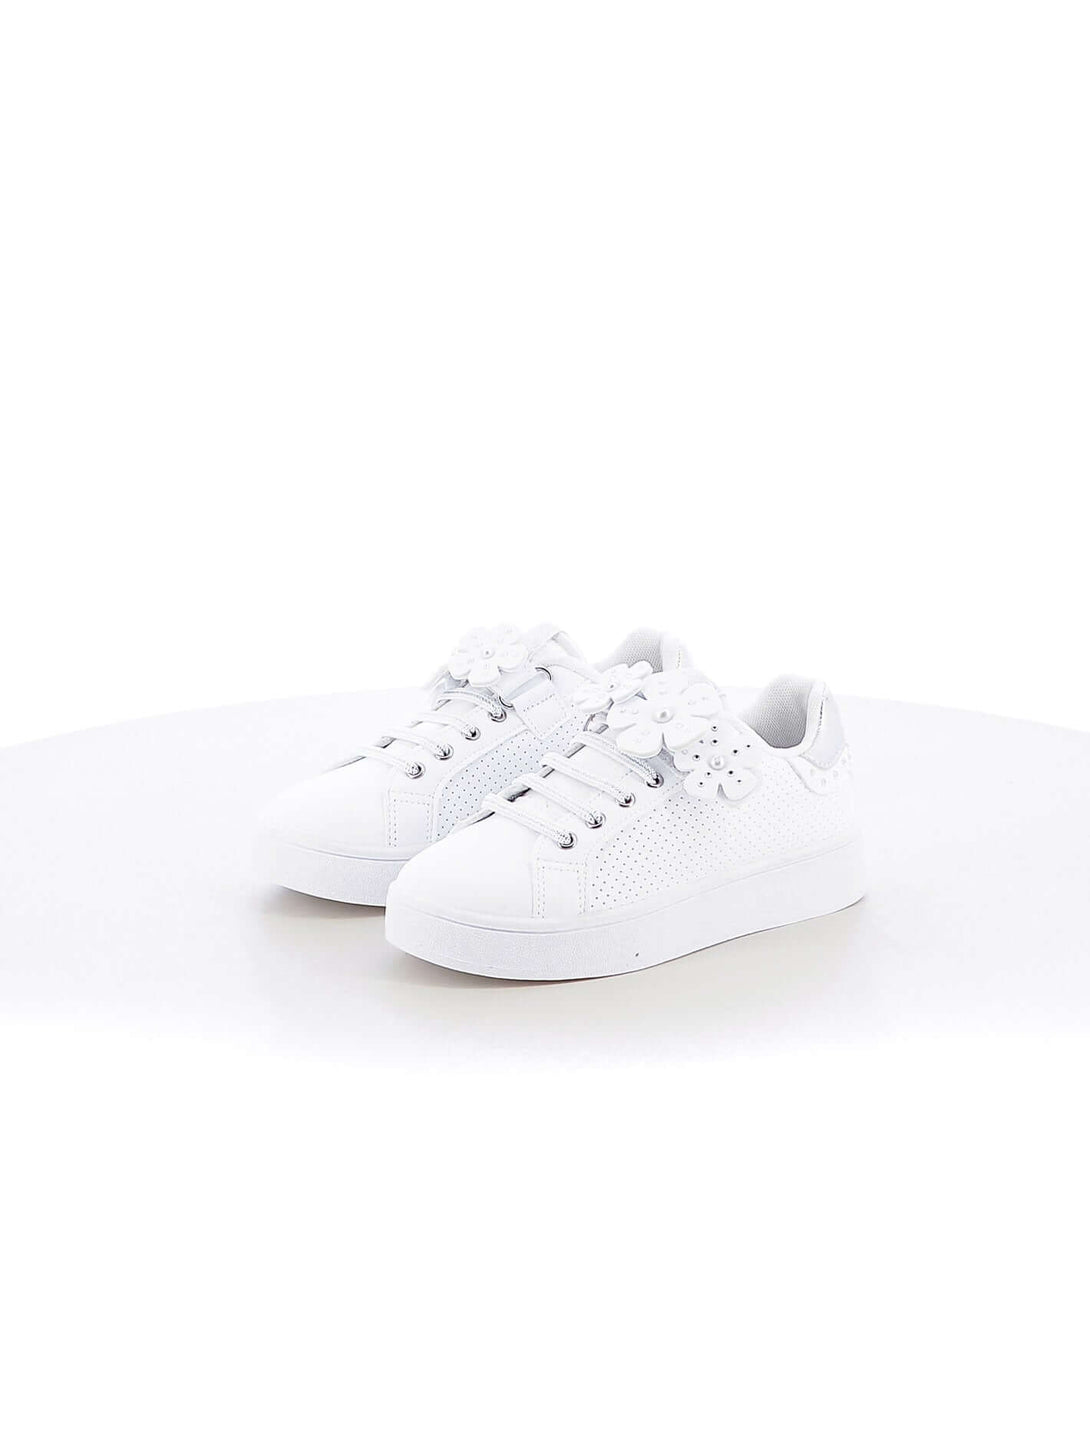 Sneakers con strappi bambina ENRICO COVERI ECG414316 bianco argento | Costa Superstore